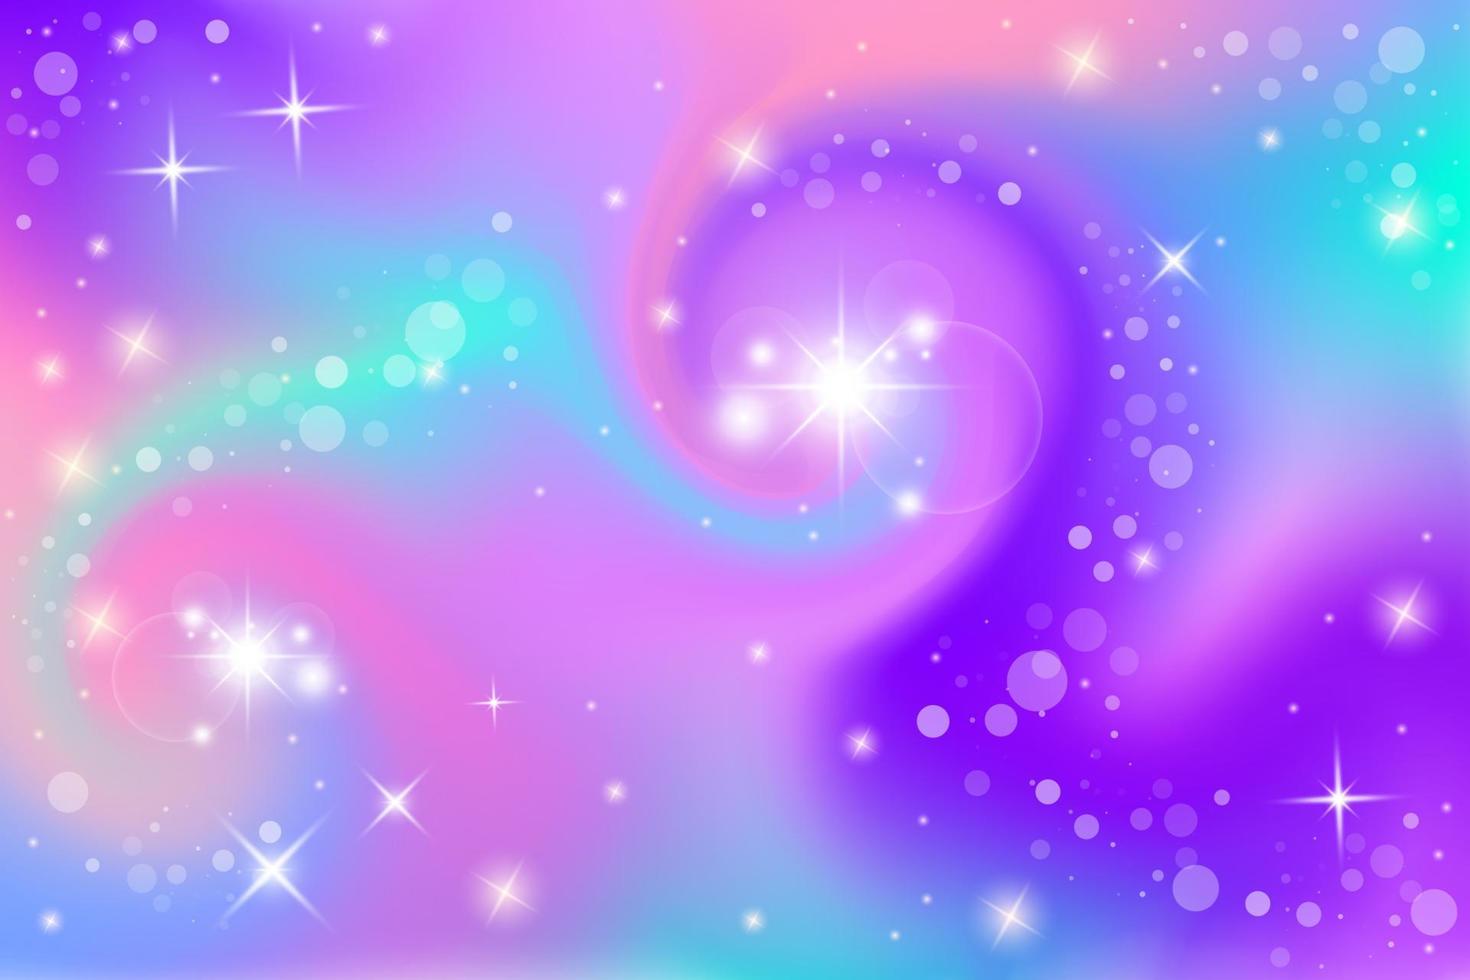 fantasi bakgrund. holografisk illustration i pastellfärger. söt tecknad tjejig bakgrund. ljus mångfärgad himmel med stjärnor och bokeh. vektor. vektor